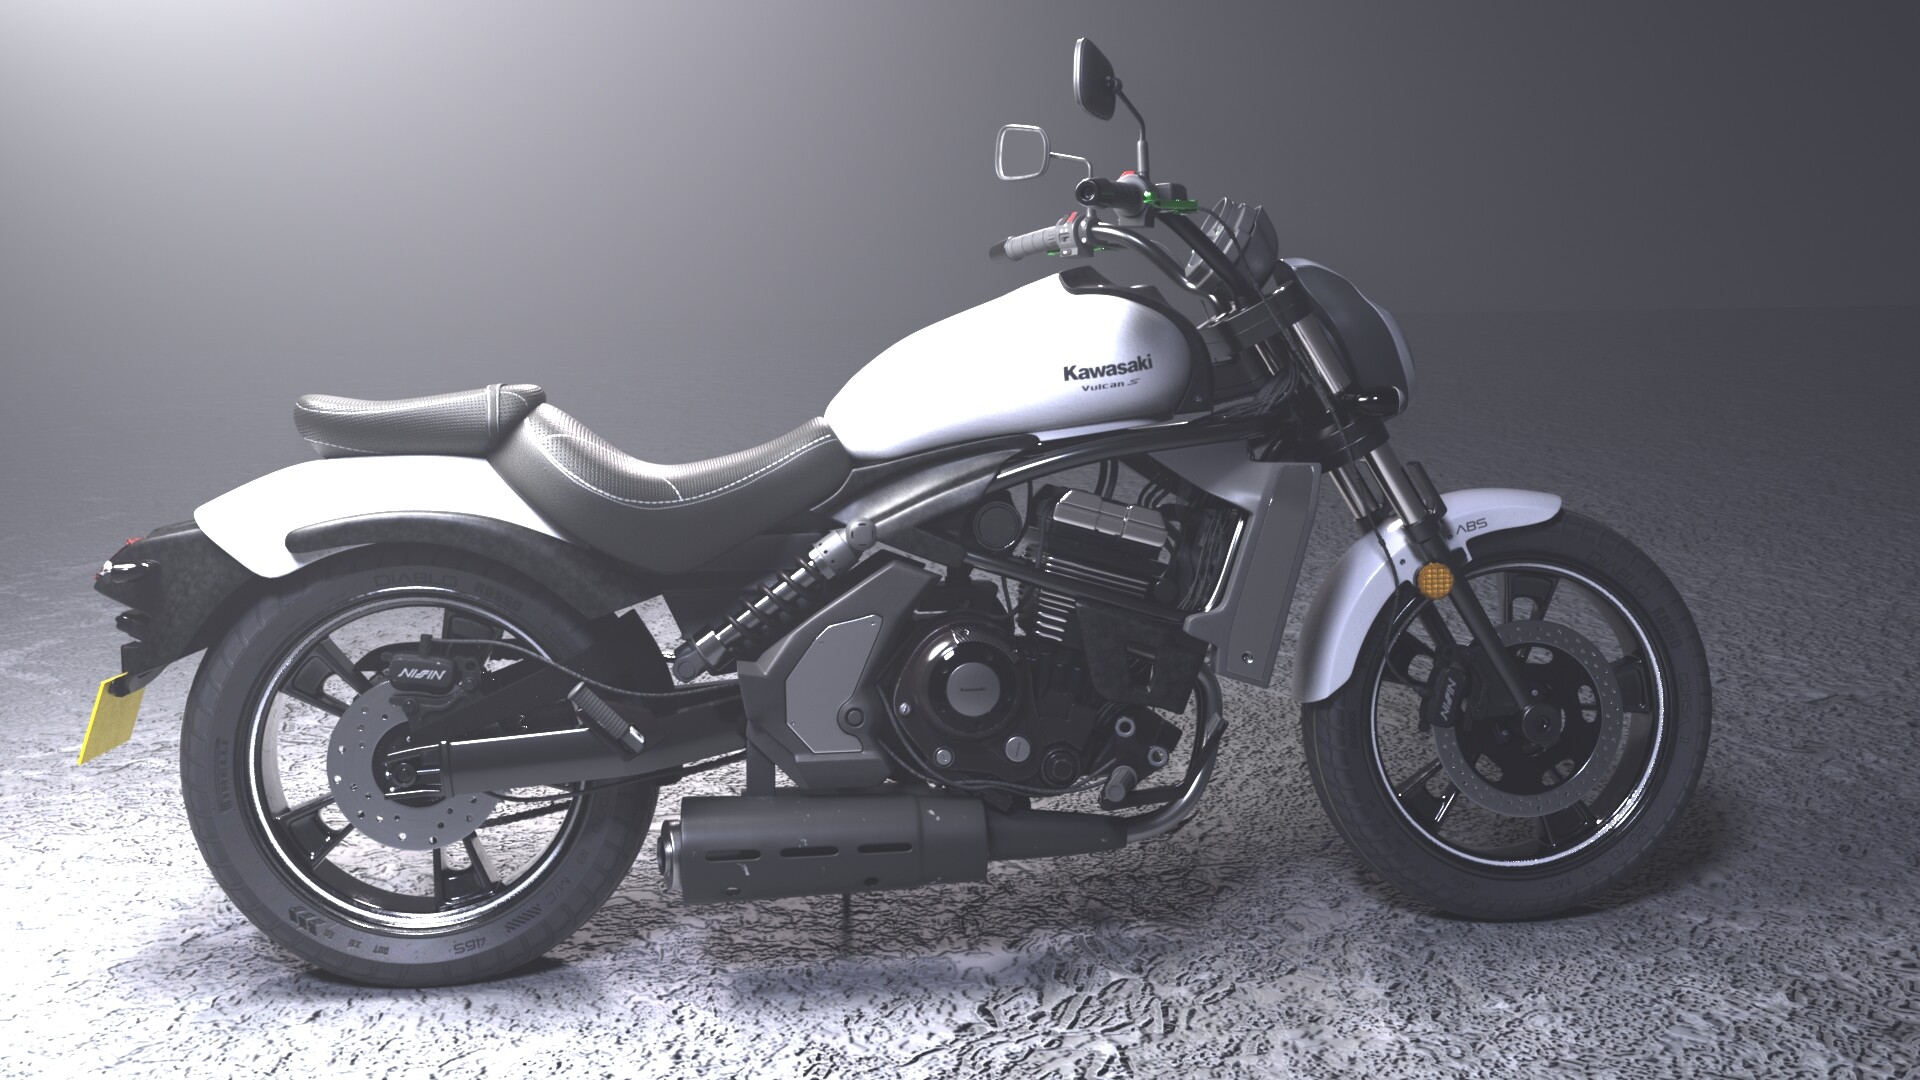 Kawasaki Vulcan S ABS EN650 Motorcycles for Sale in Australia   bikesalescomau